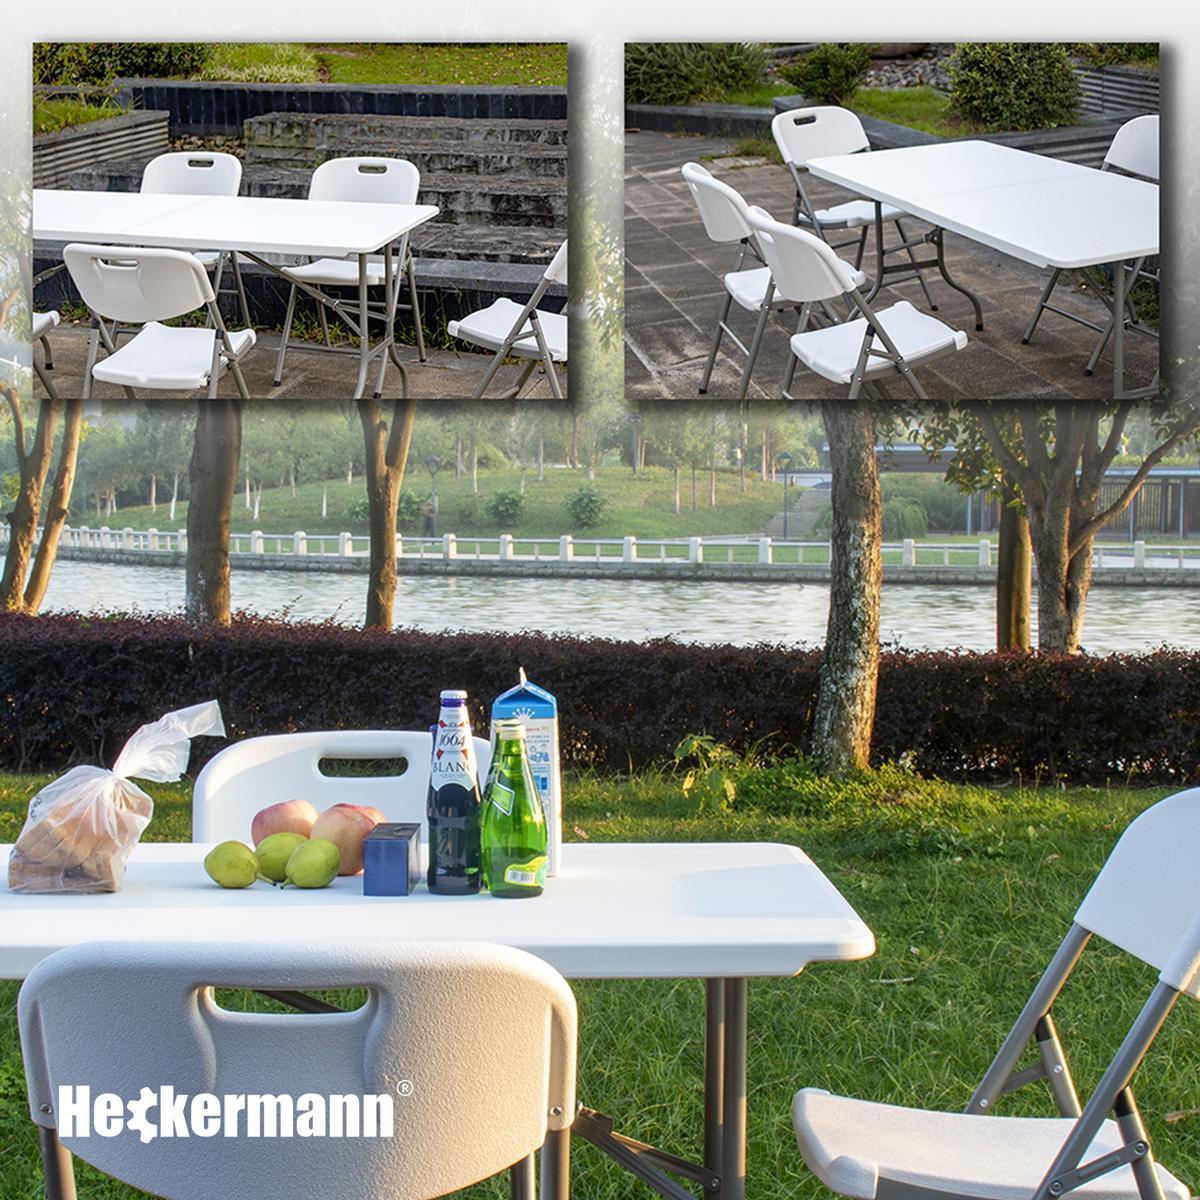 Stół składany cateringowy 180x74cm Heckermann XJM-Z180 Biały nr. 8